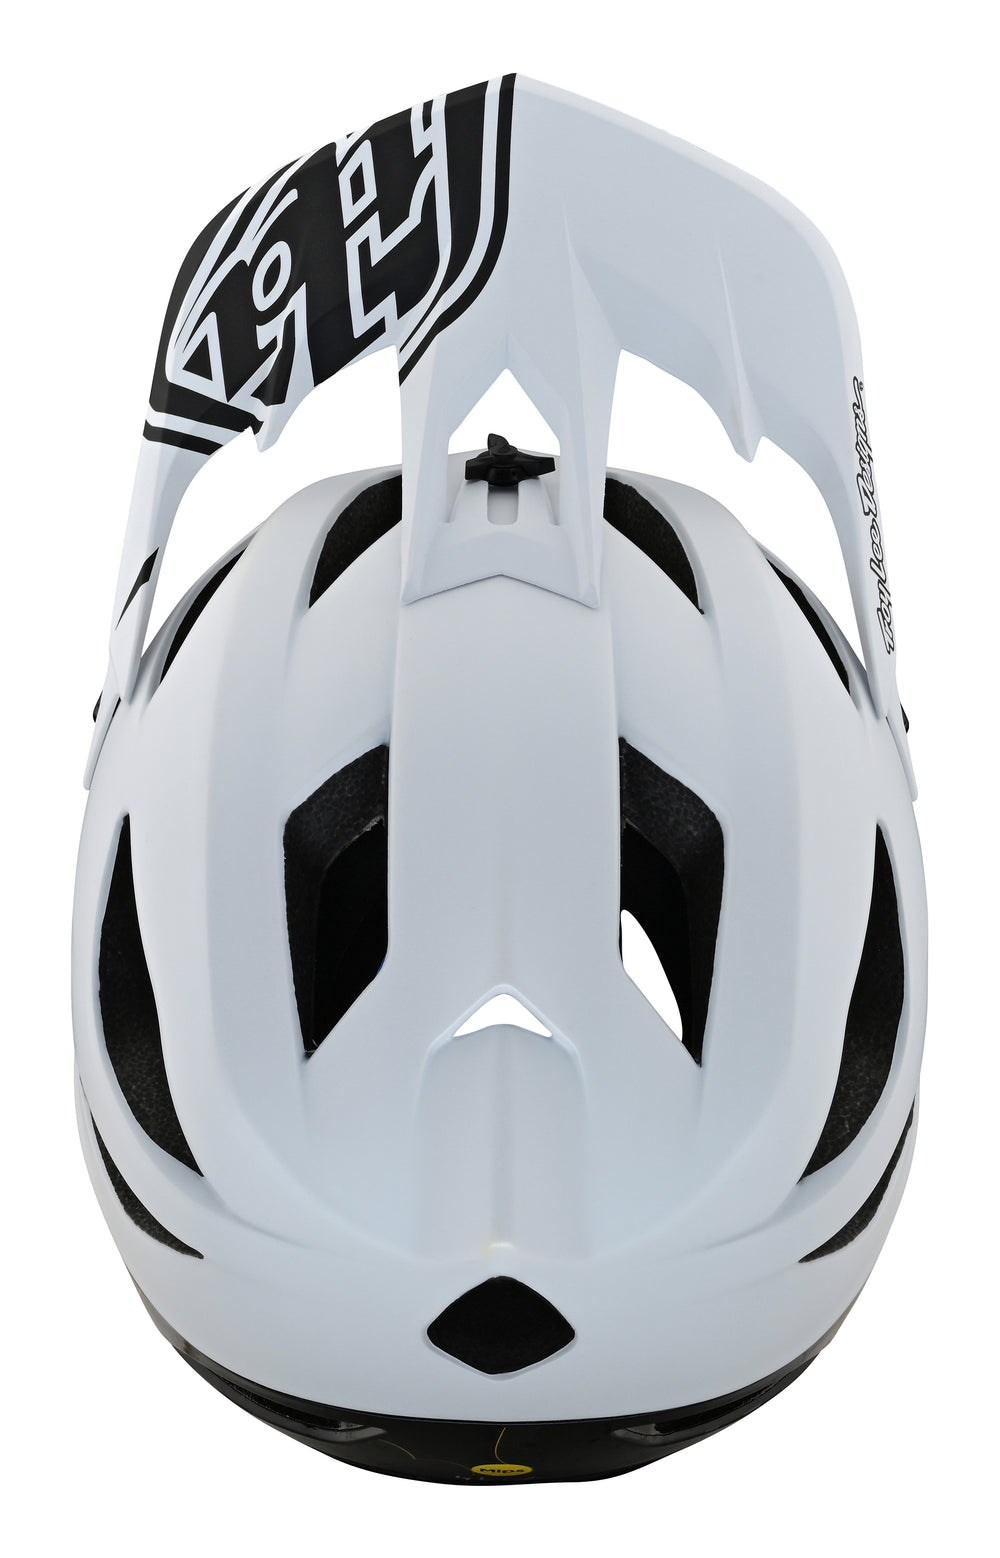 Troy Lee Designs Stage Helmet Black - Joyride Cycles